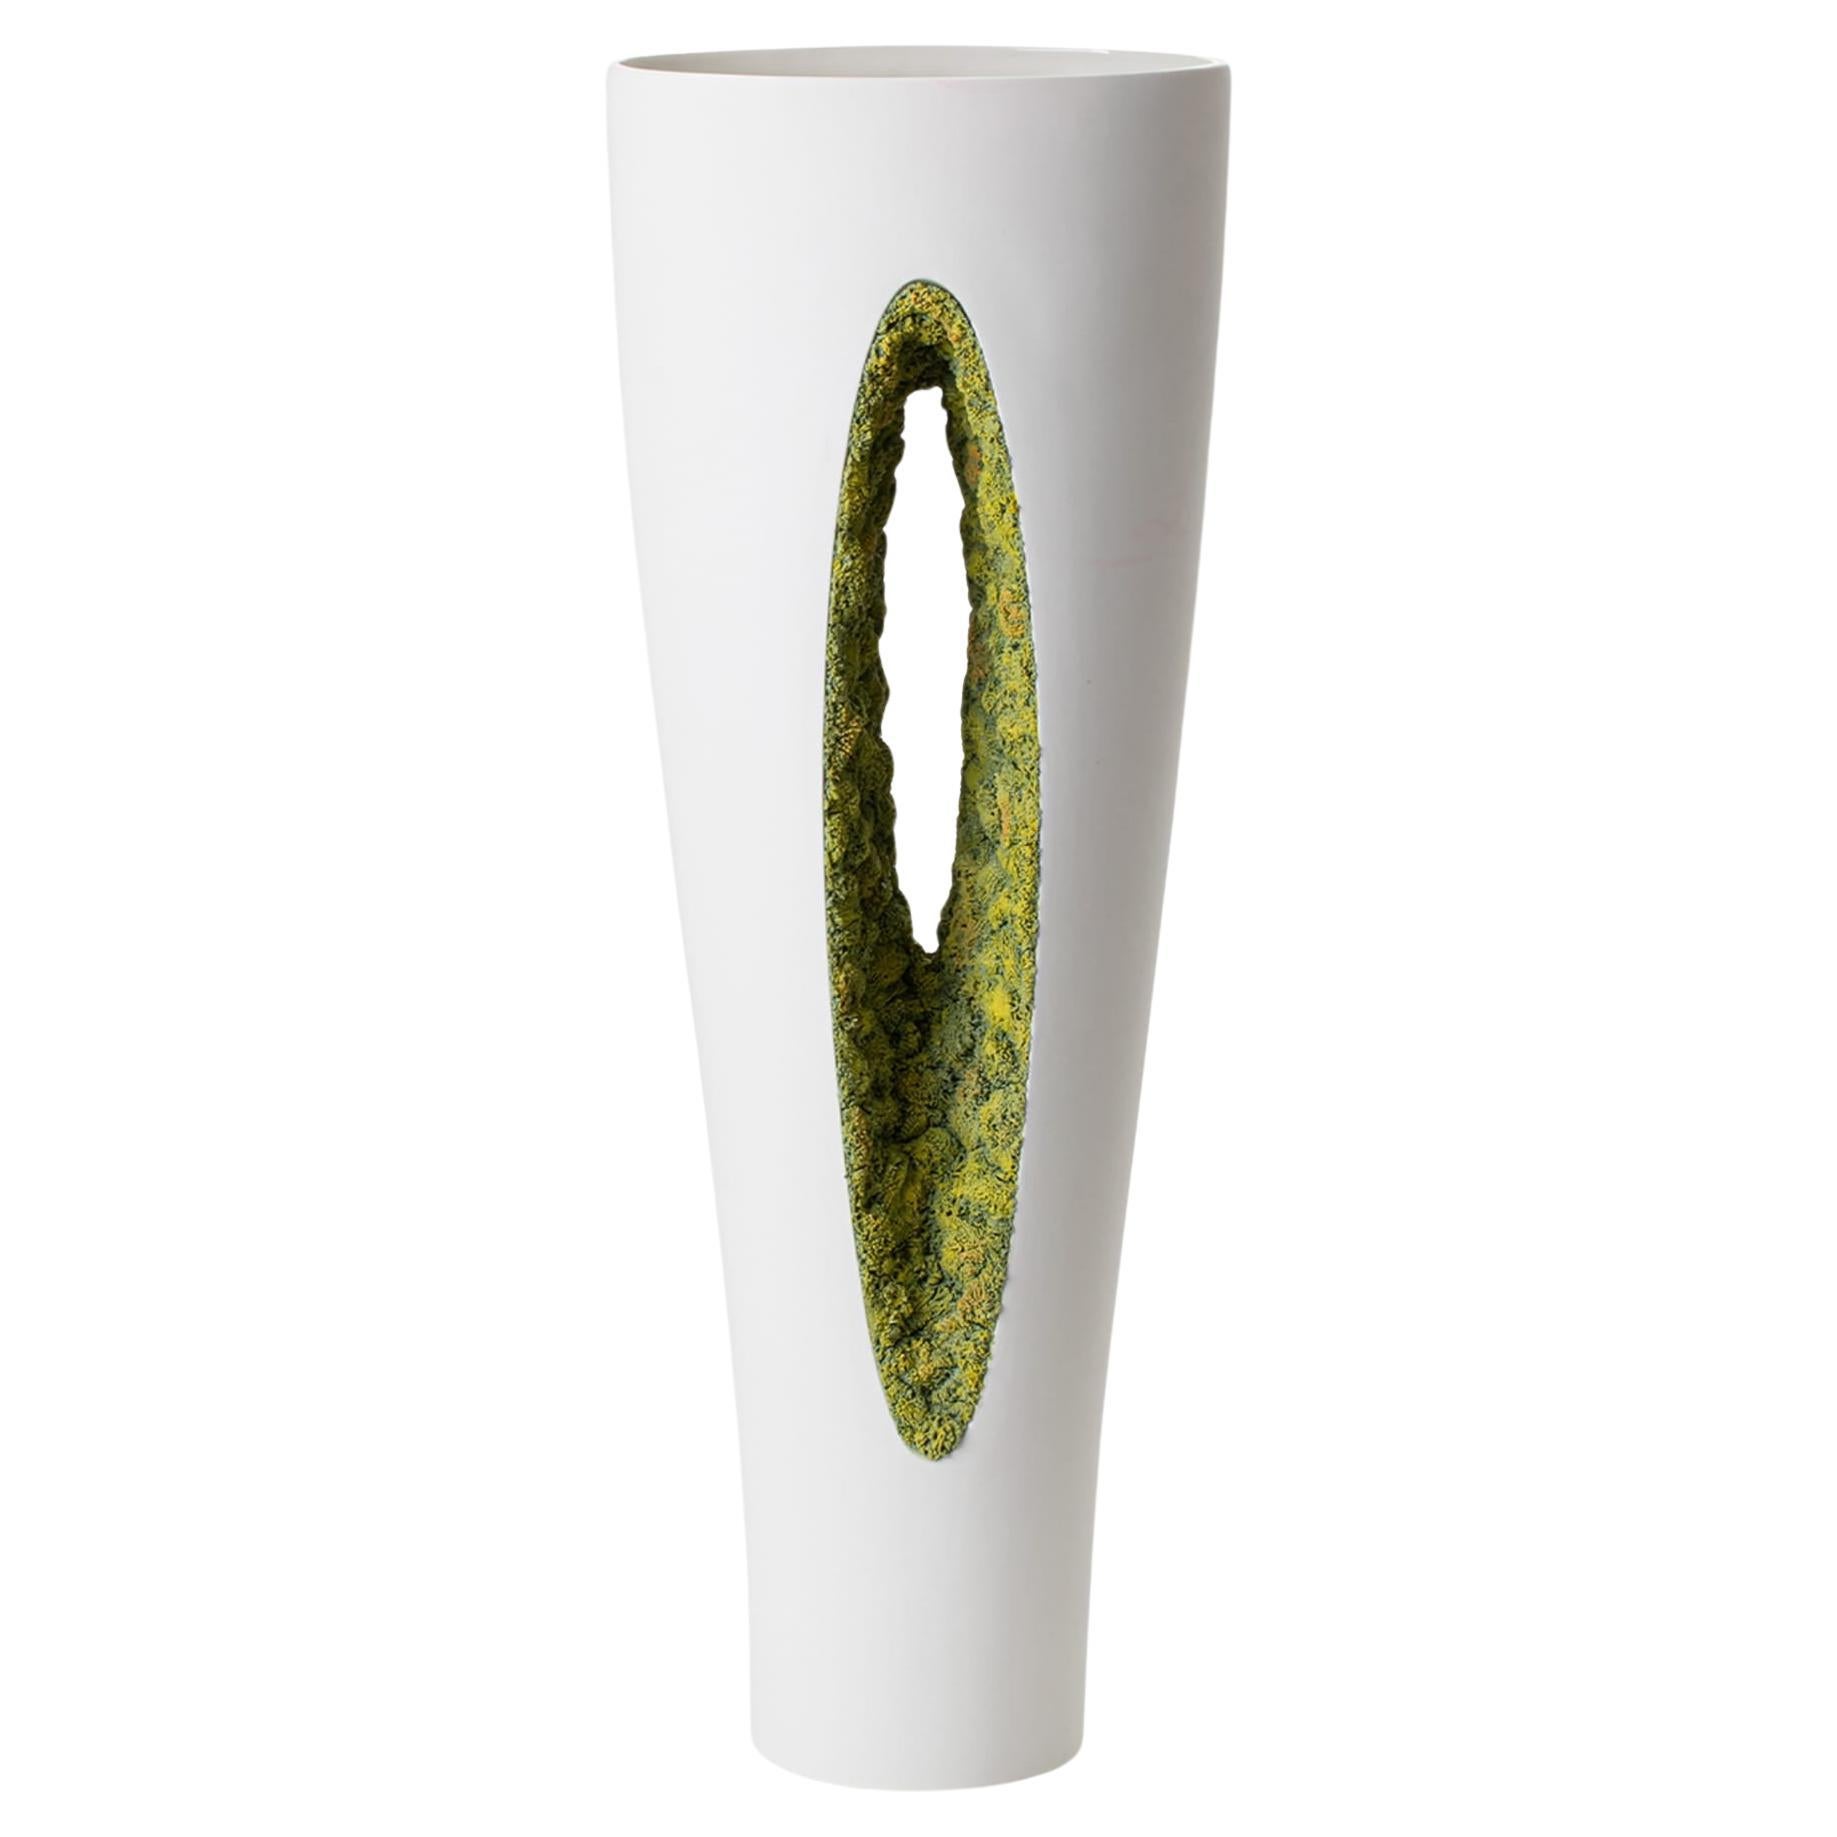 Grüne Moss-Vase von innen heraus